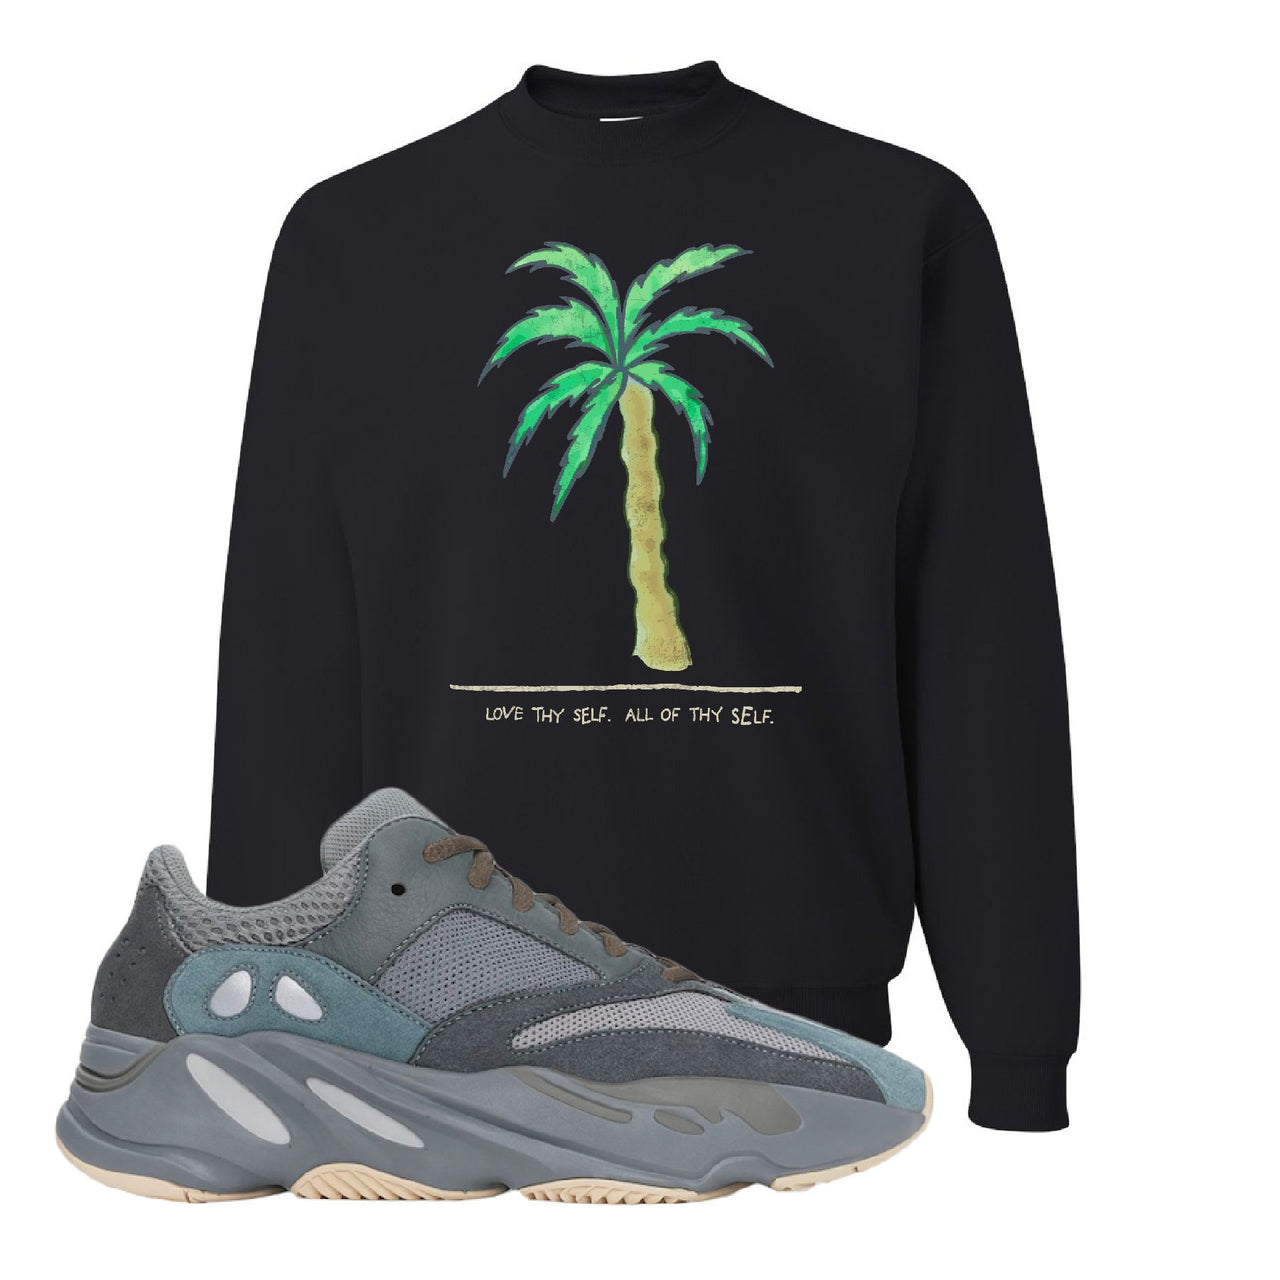 Yeezy Boost 700 Teal Blue Love Thyself Palm Black Sneaker Hook Up Crewneck Sweatshirt